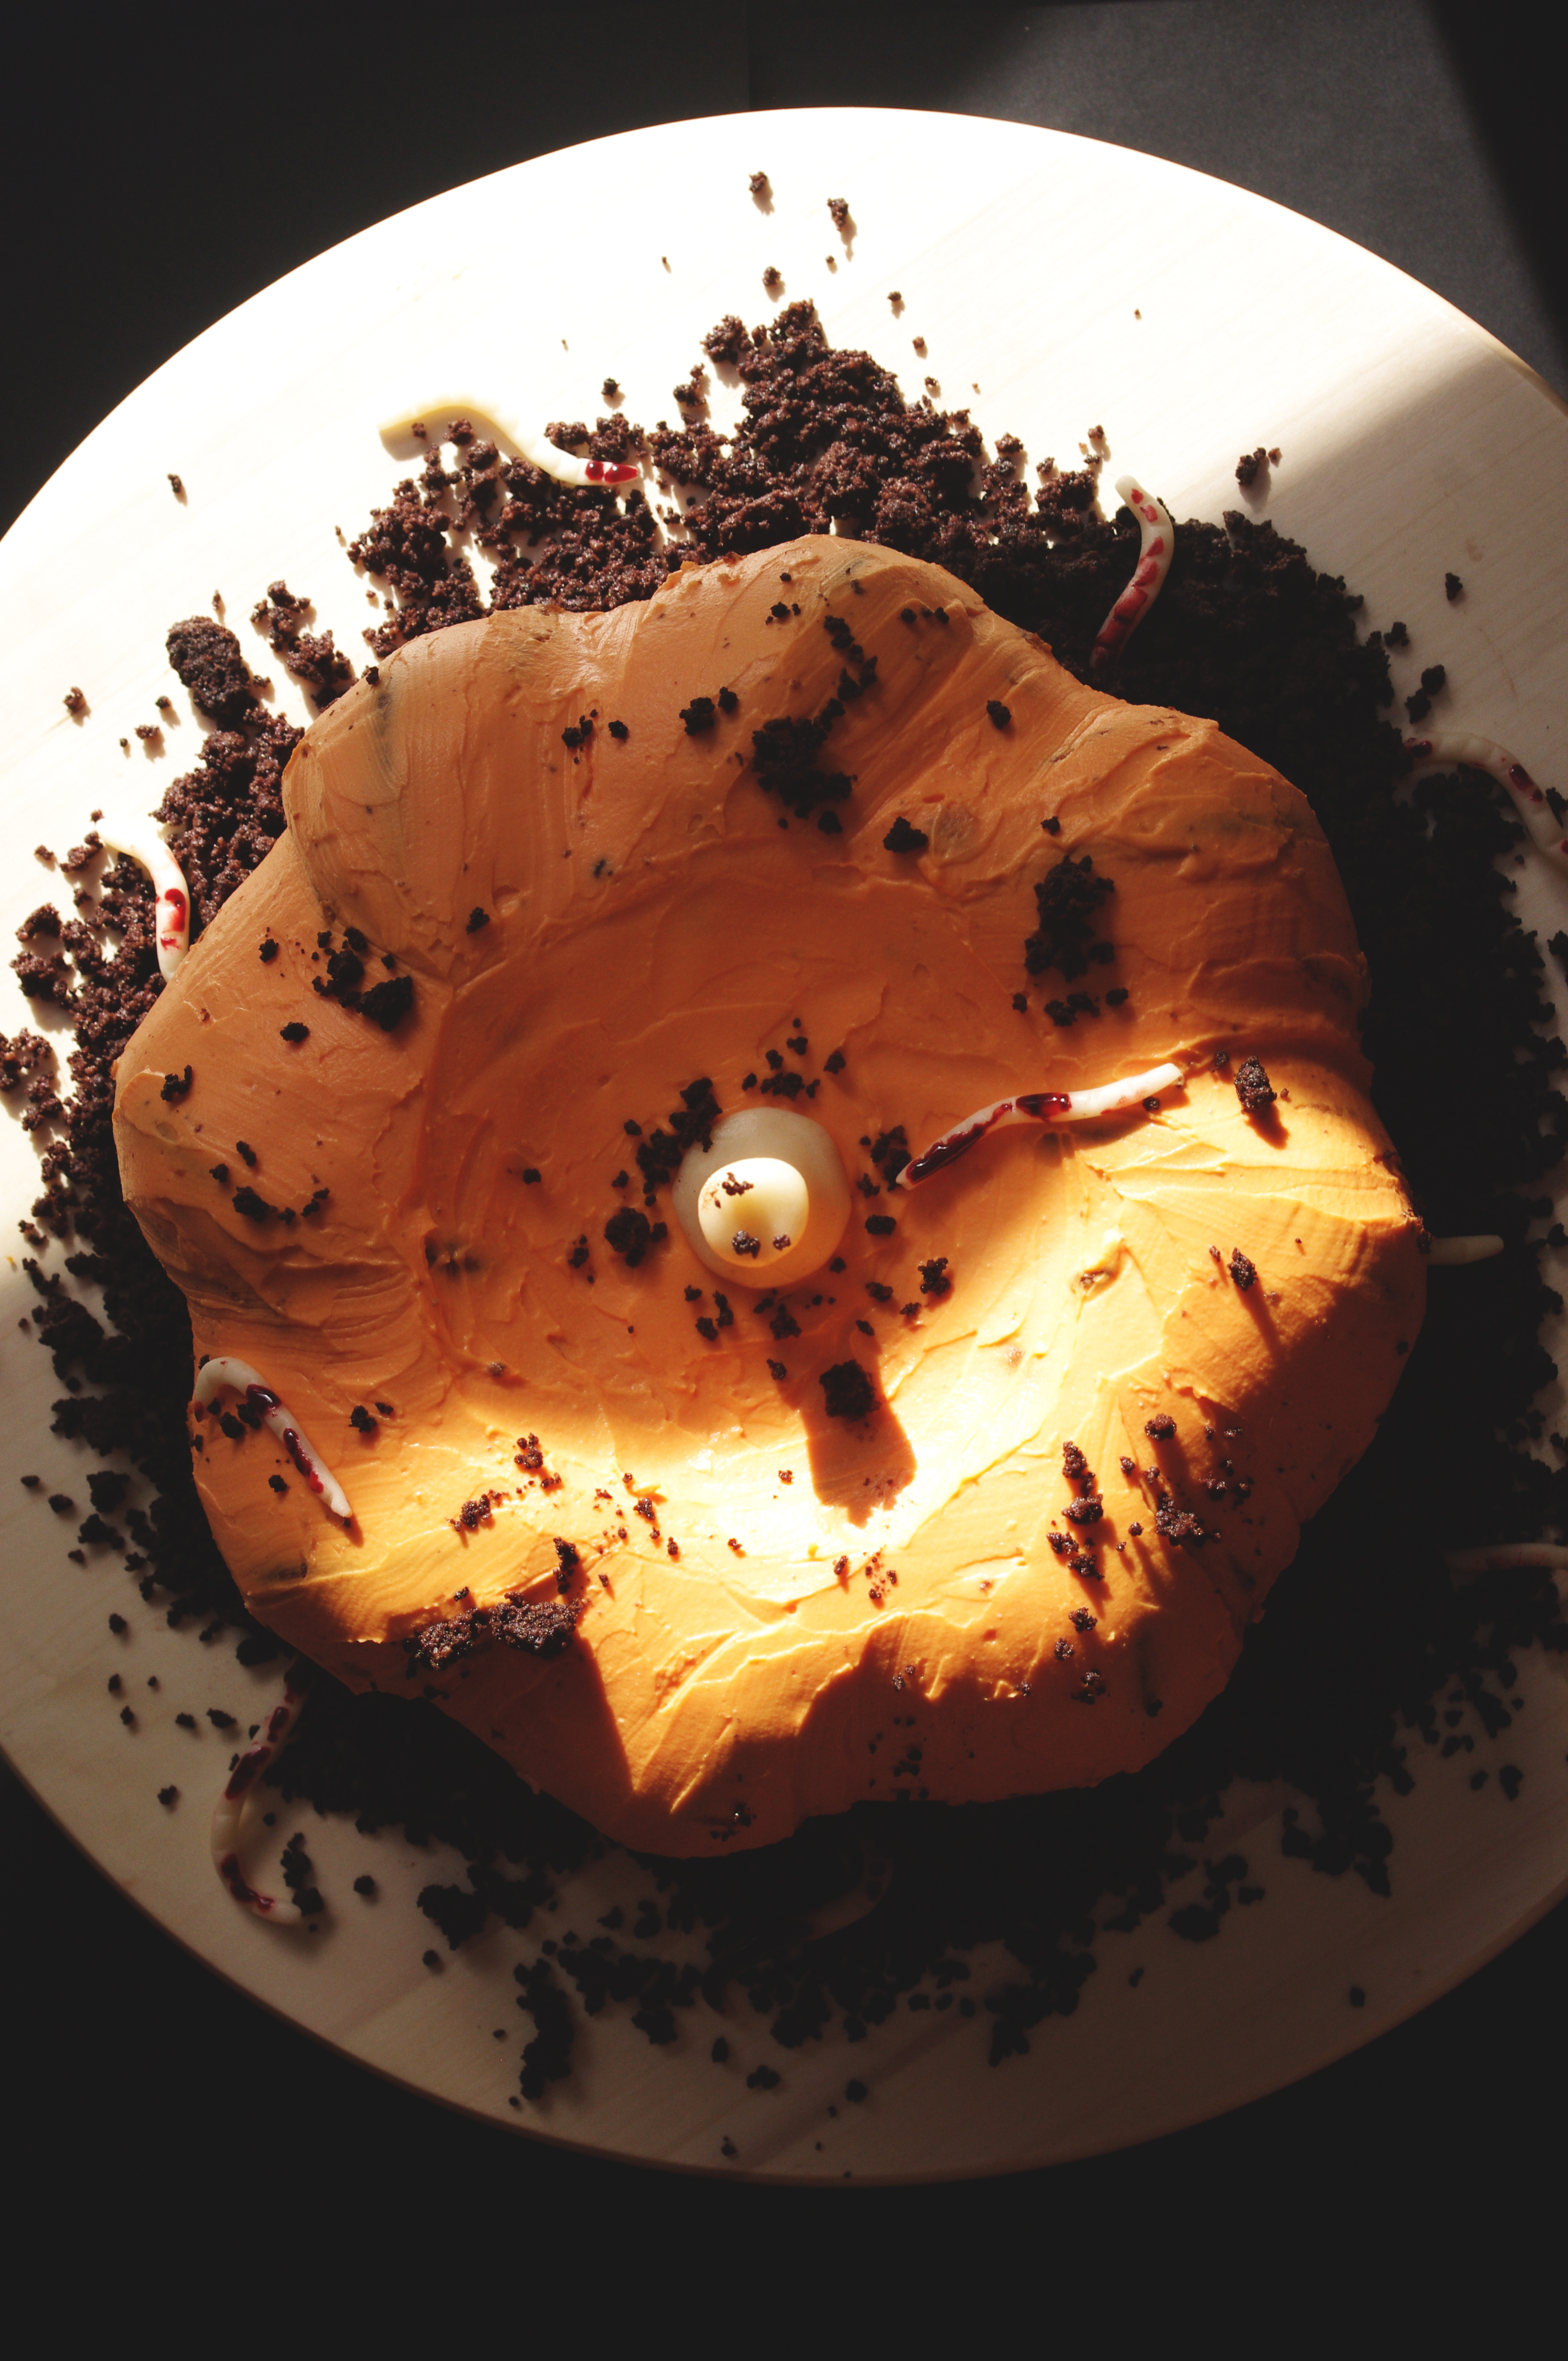 Le gâteau citrouille spécial Halloween au potimarron et au cacao